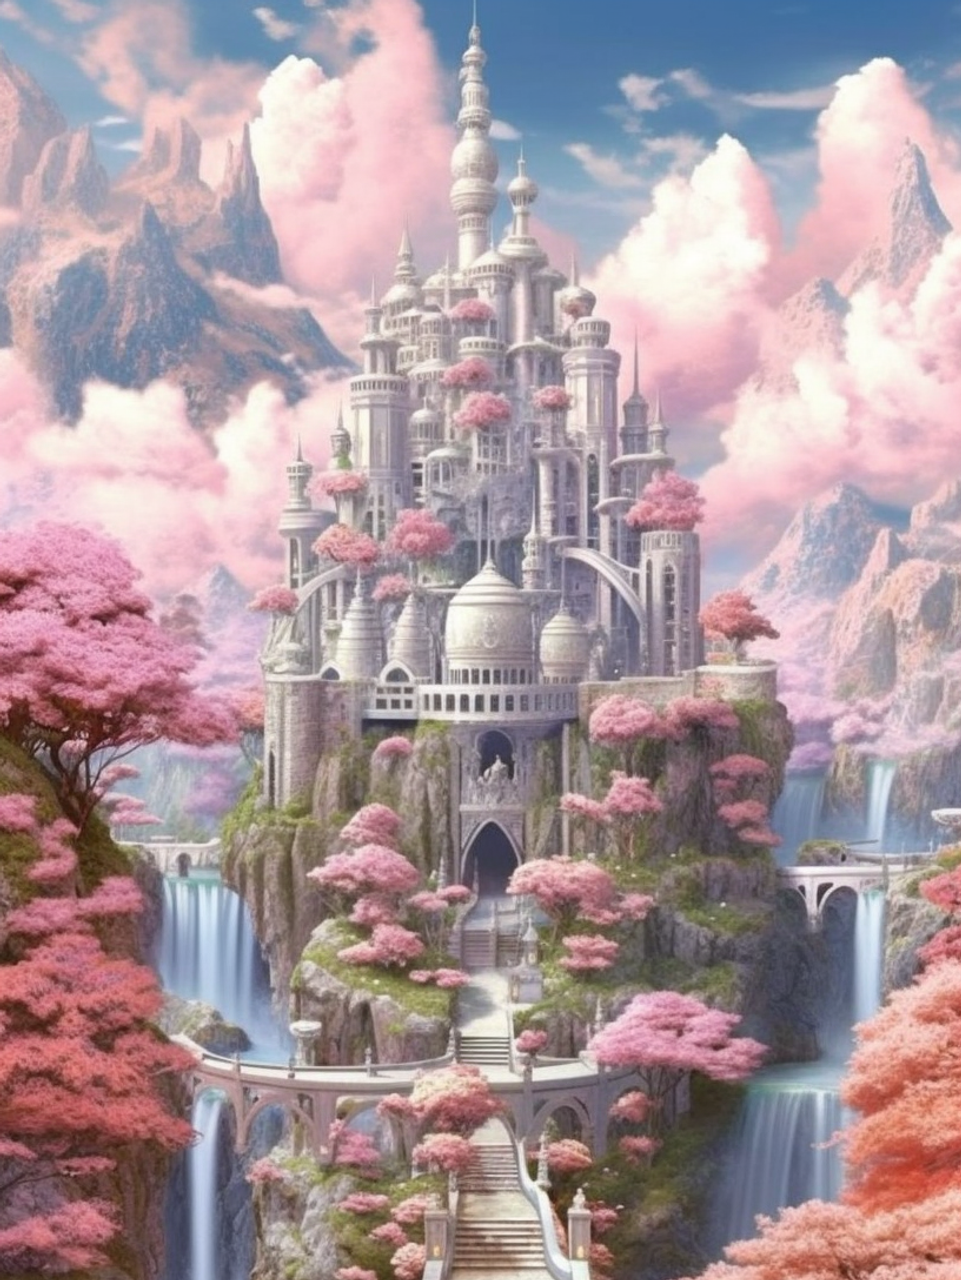 5D Diamond Painting Pink Cloud Castle Kit